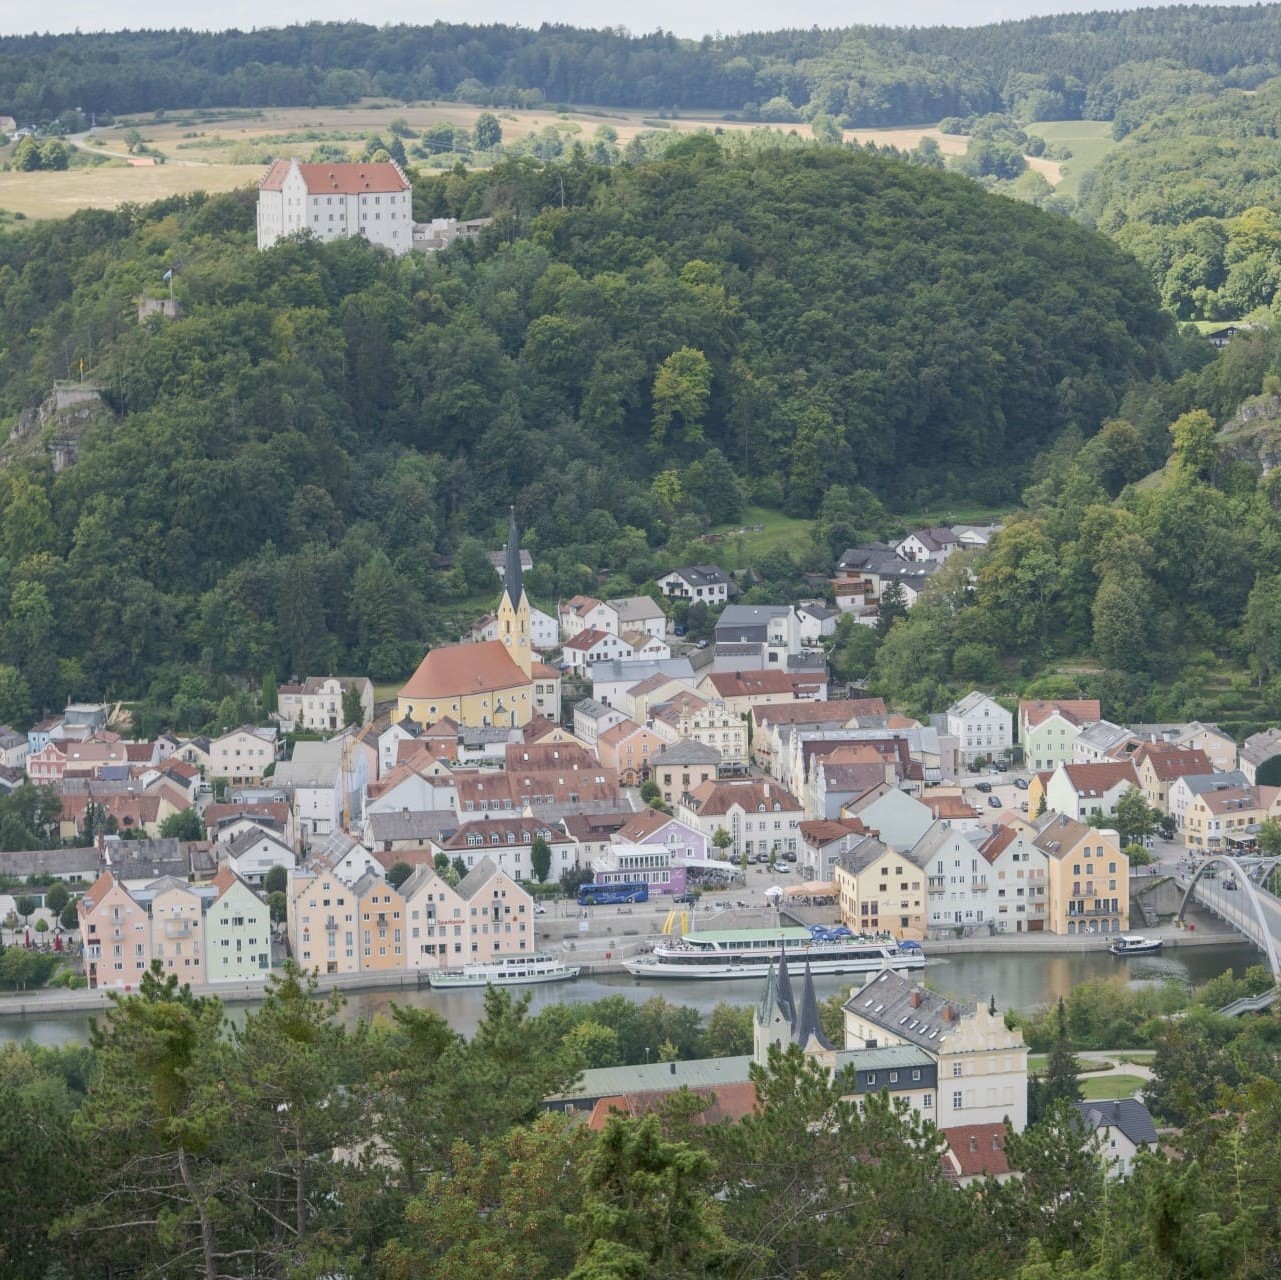 Blick auf die im Tal liegende Stadt Riedenburg. Hoch über der Stadt erhebt sich die Rosenburg. Links von ihr steht die Burgruine Rabenstein und rechts die Burgruine Tachenstein.